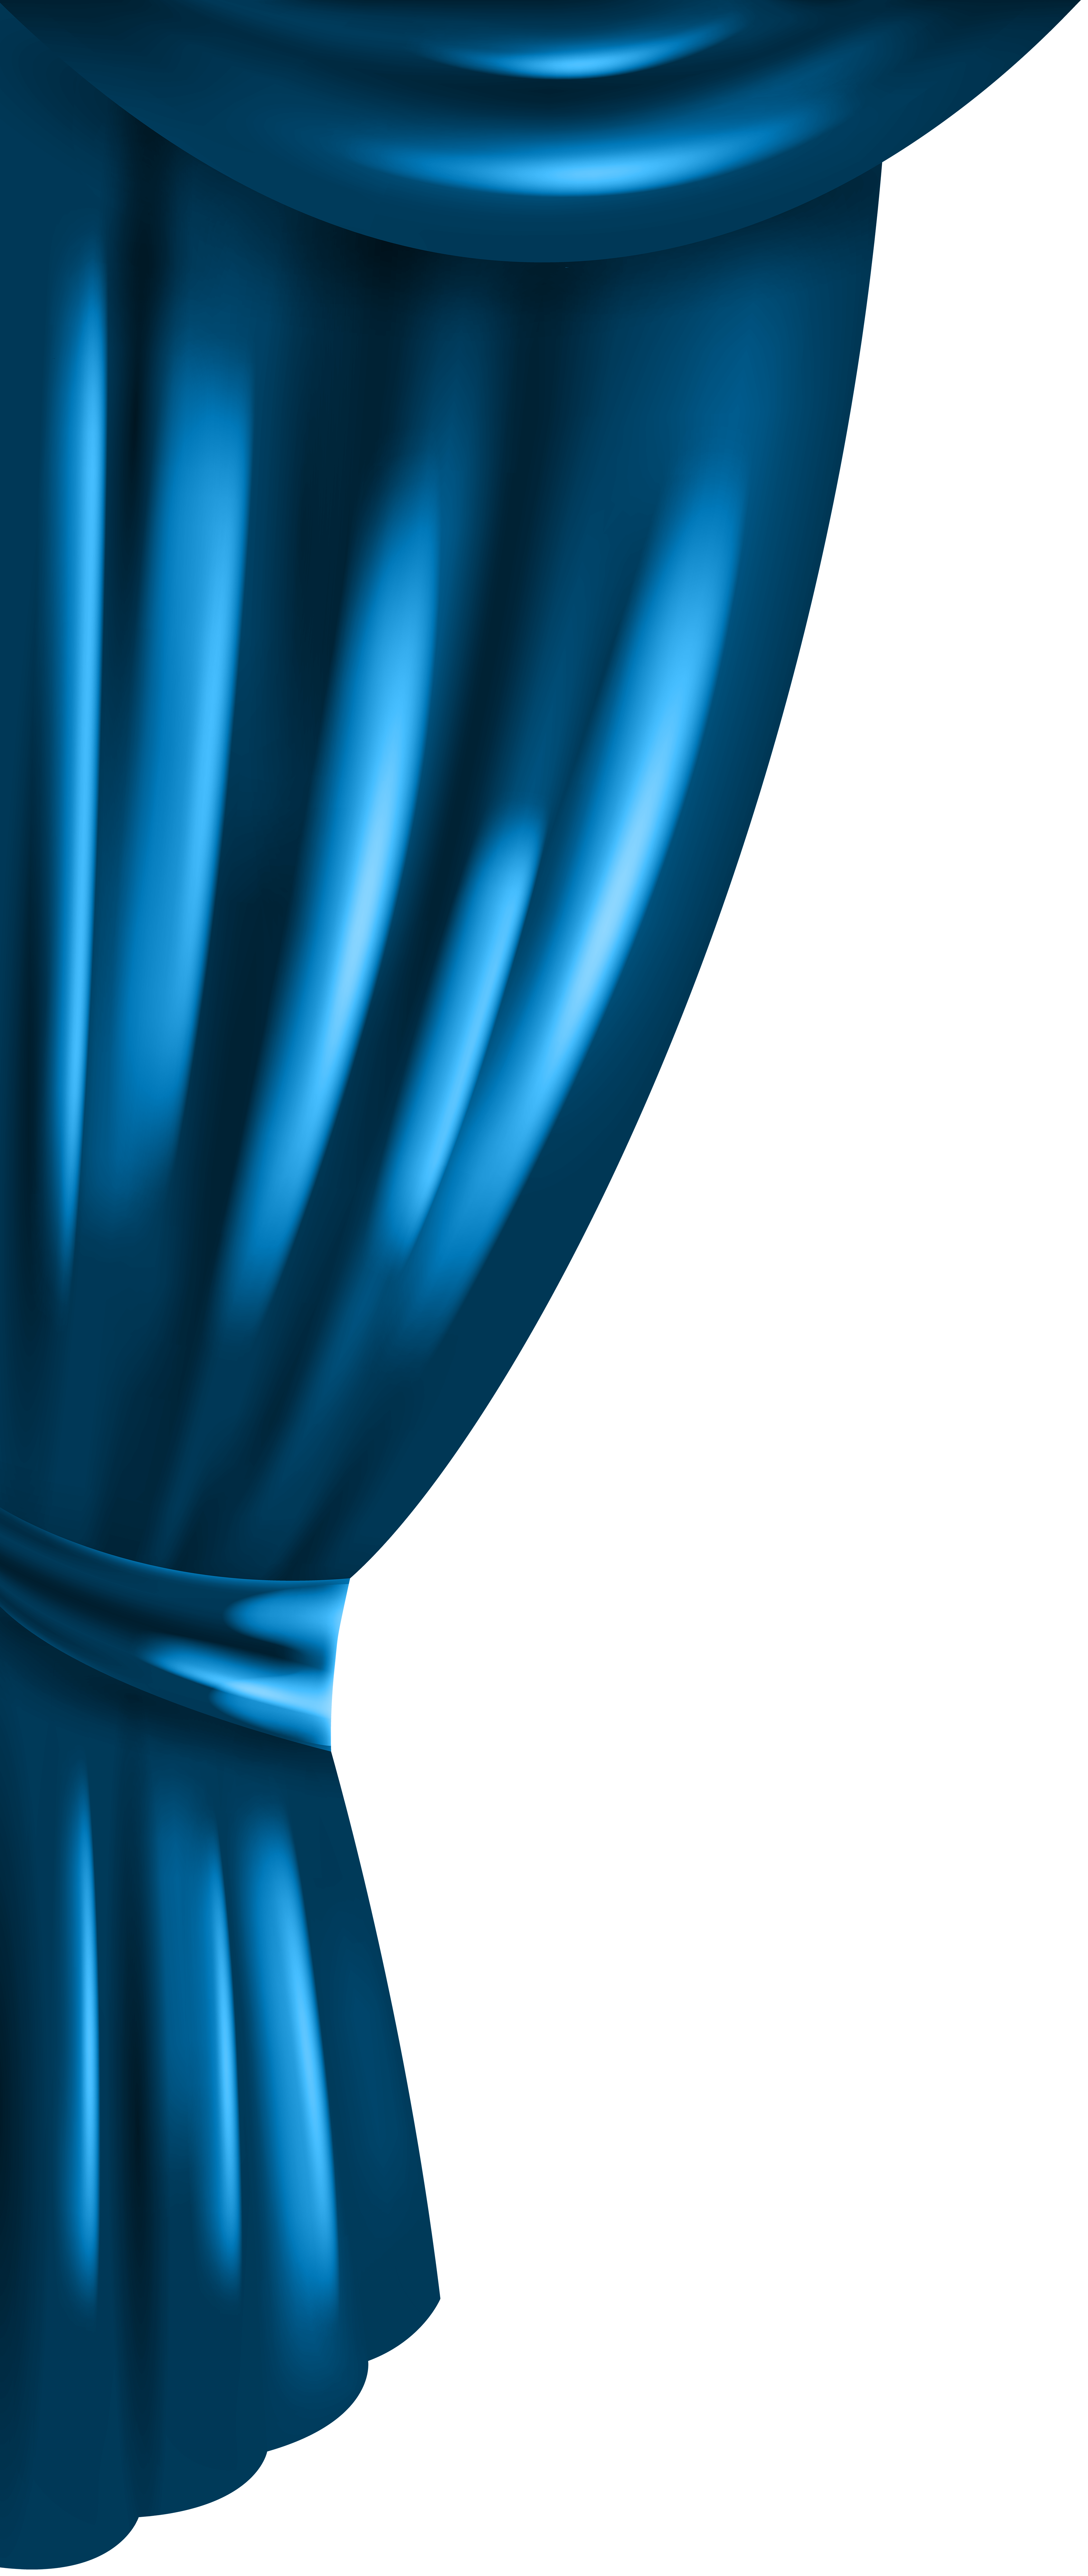 curtain clipart blue